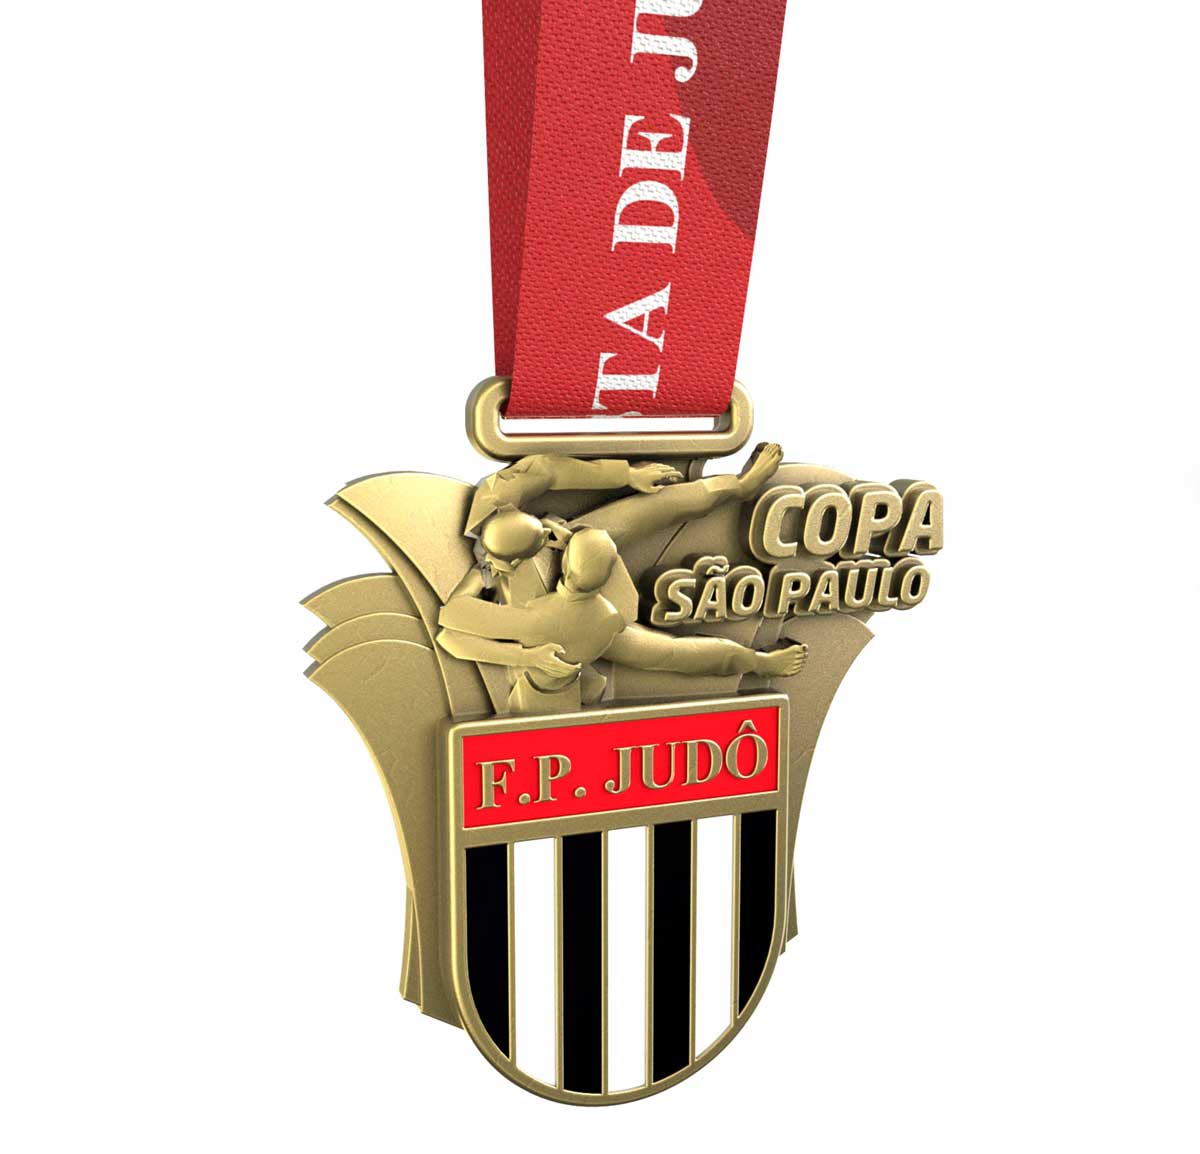 Medalhas da Copa São Paulo de Judô ganham design exclusivo e compatível com a importância da competição